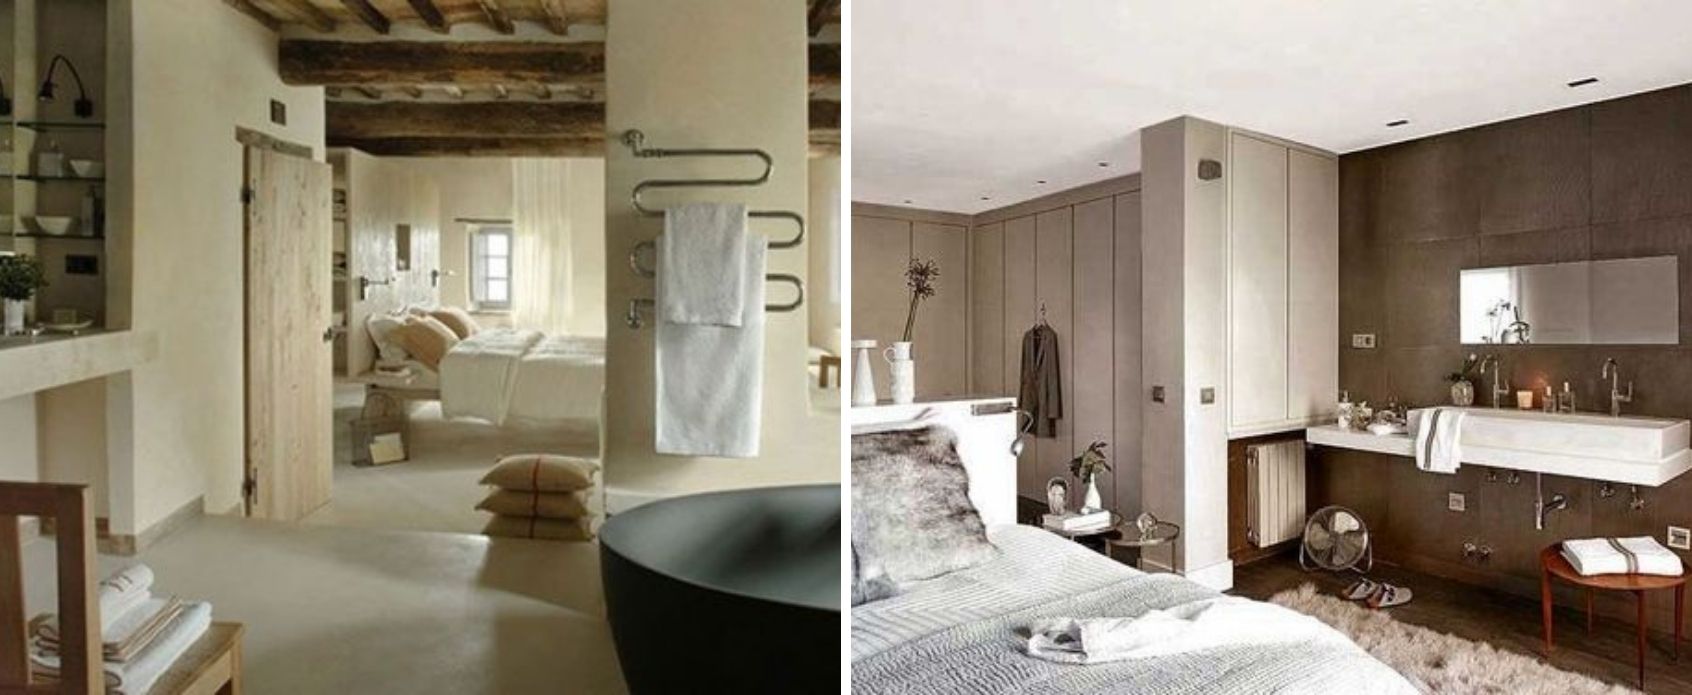 consejos_baño_integrado_dormitorio_diseño_interiorismo_decoración_trucos-08